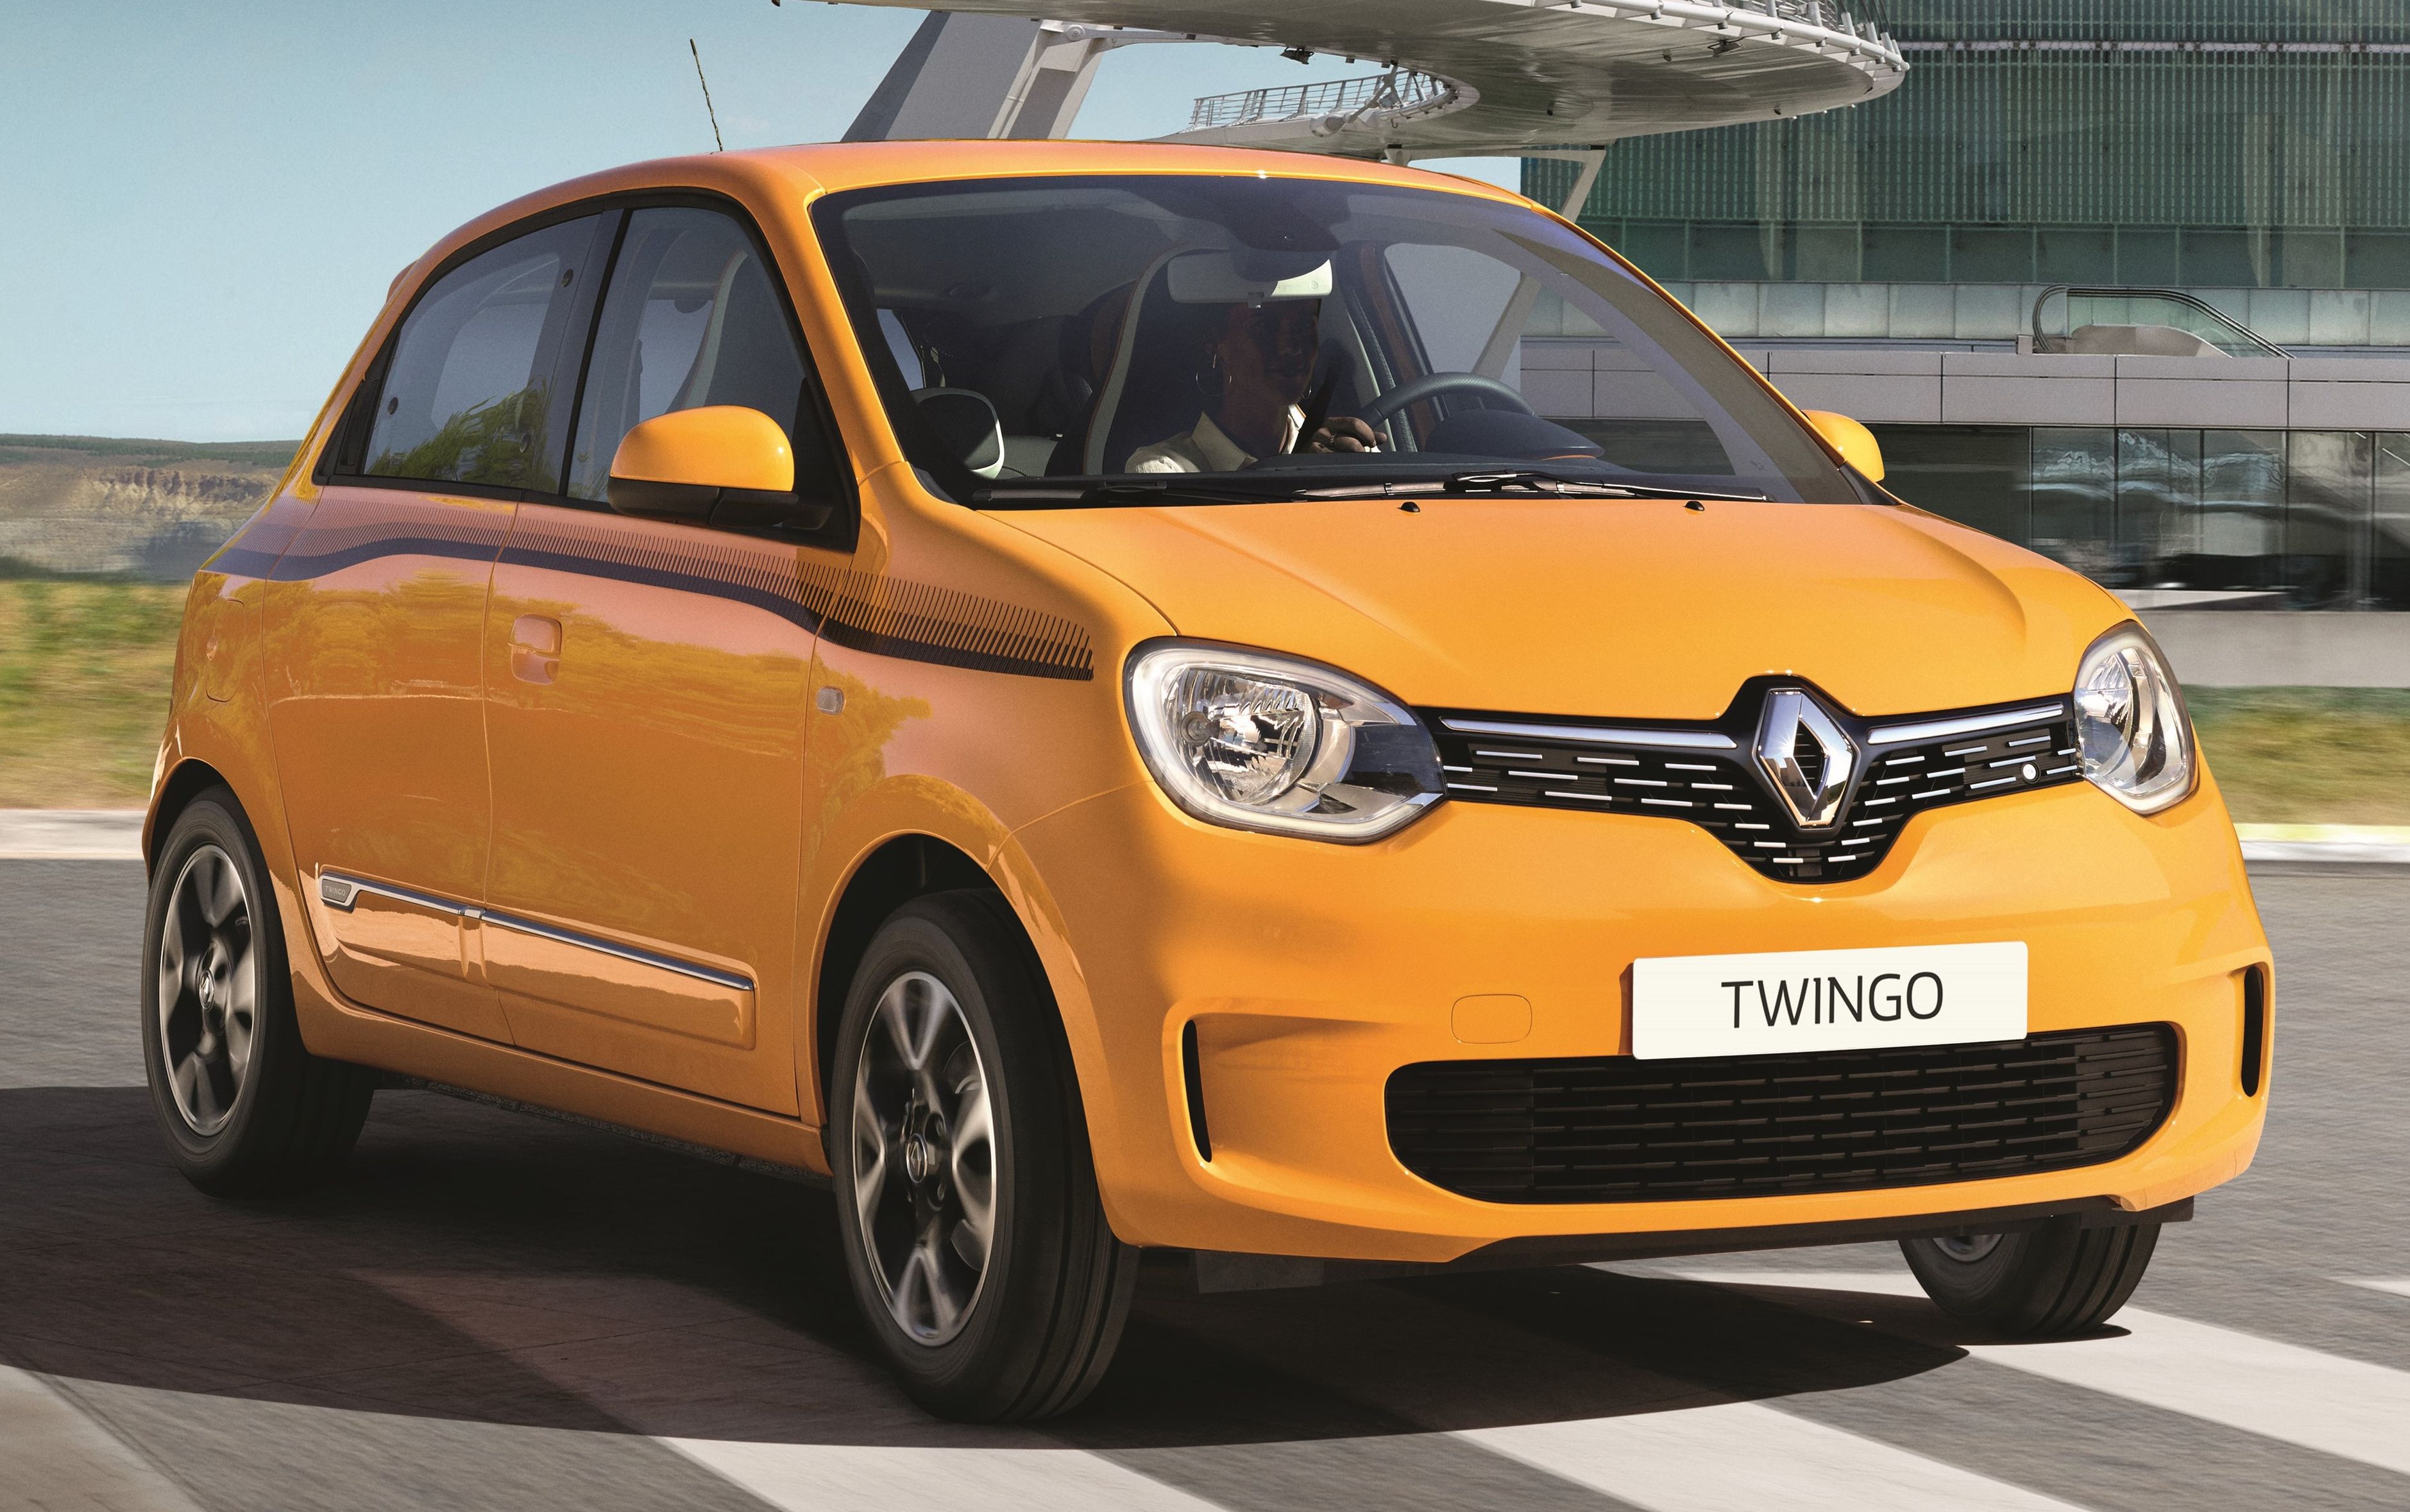 Renault Twingo best model